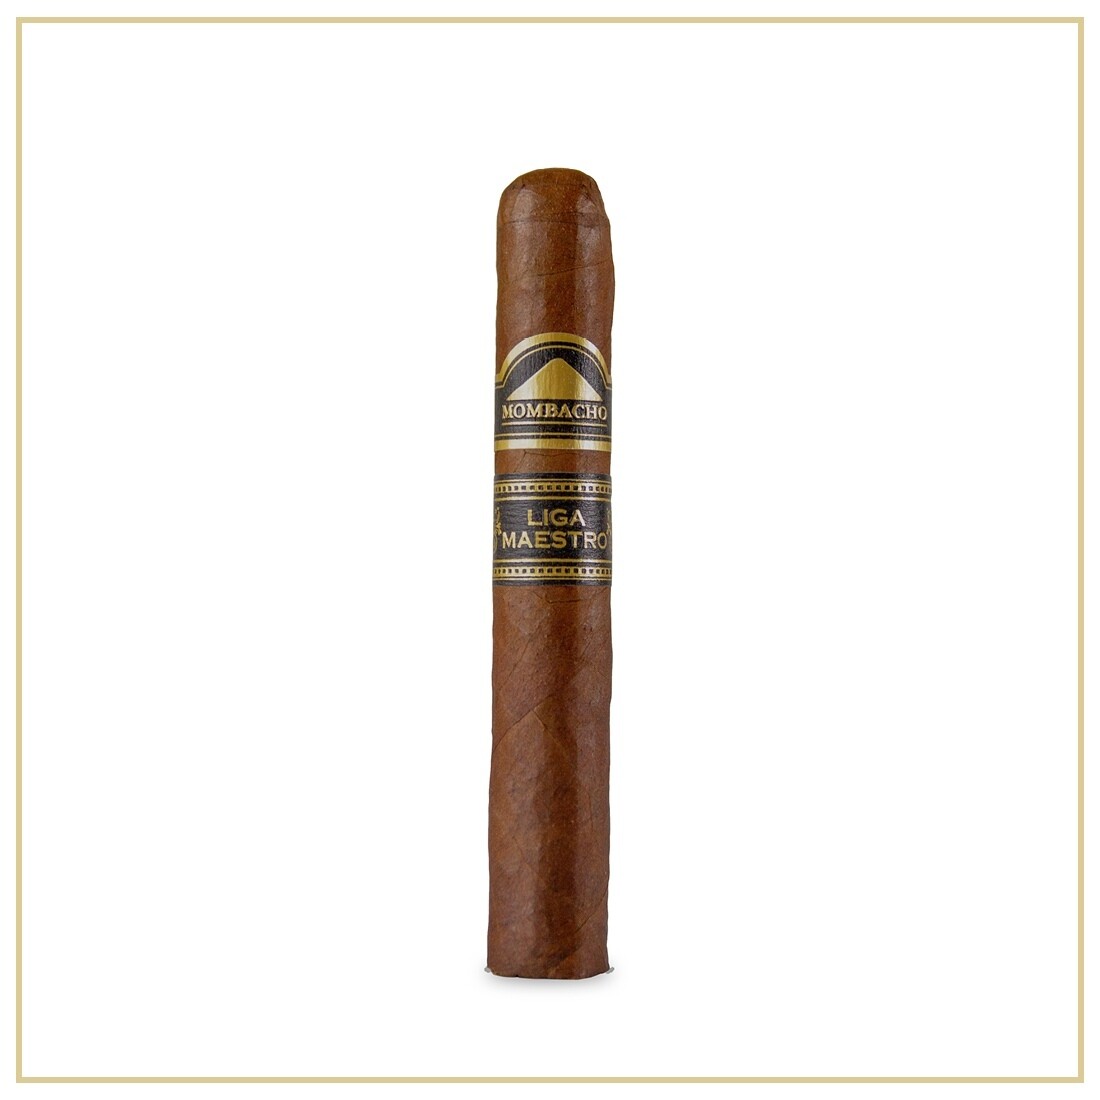 Mombacho Liga Maestro Pequeno 4 1/2 x 44 Single Cigar